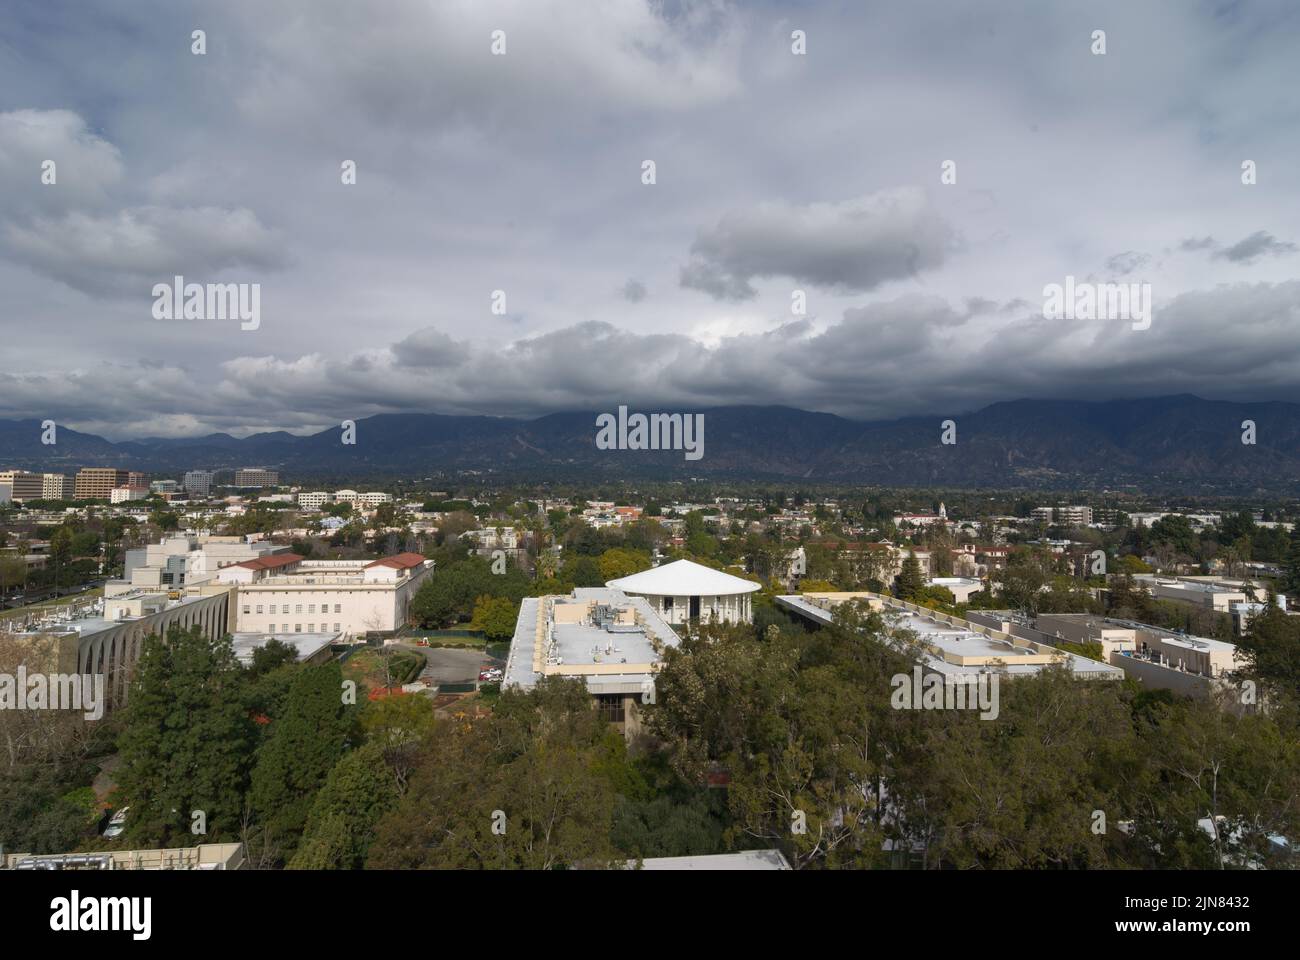 Pasadena dans le comté de Los Angeles, en regardant vers le nord vers les montagnes San Gabriel, montre les bâtiments Caltech en premier plan. Banque D'Images